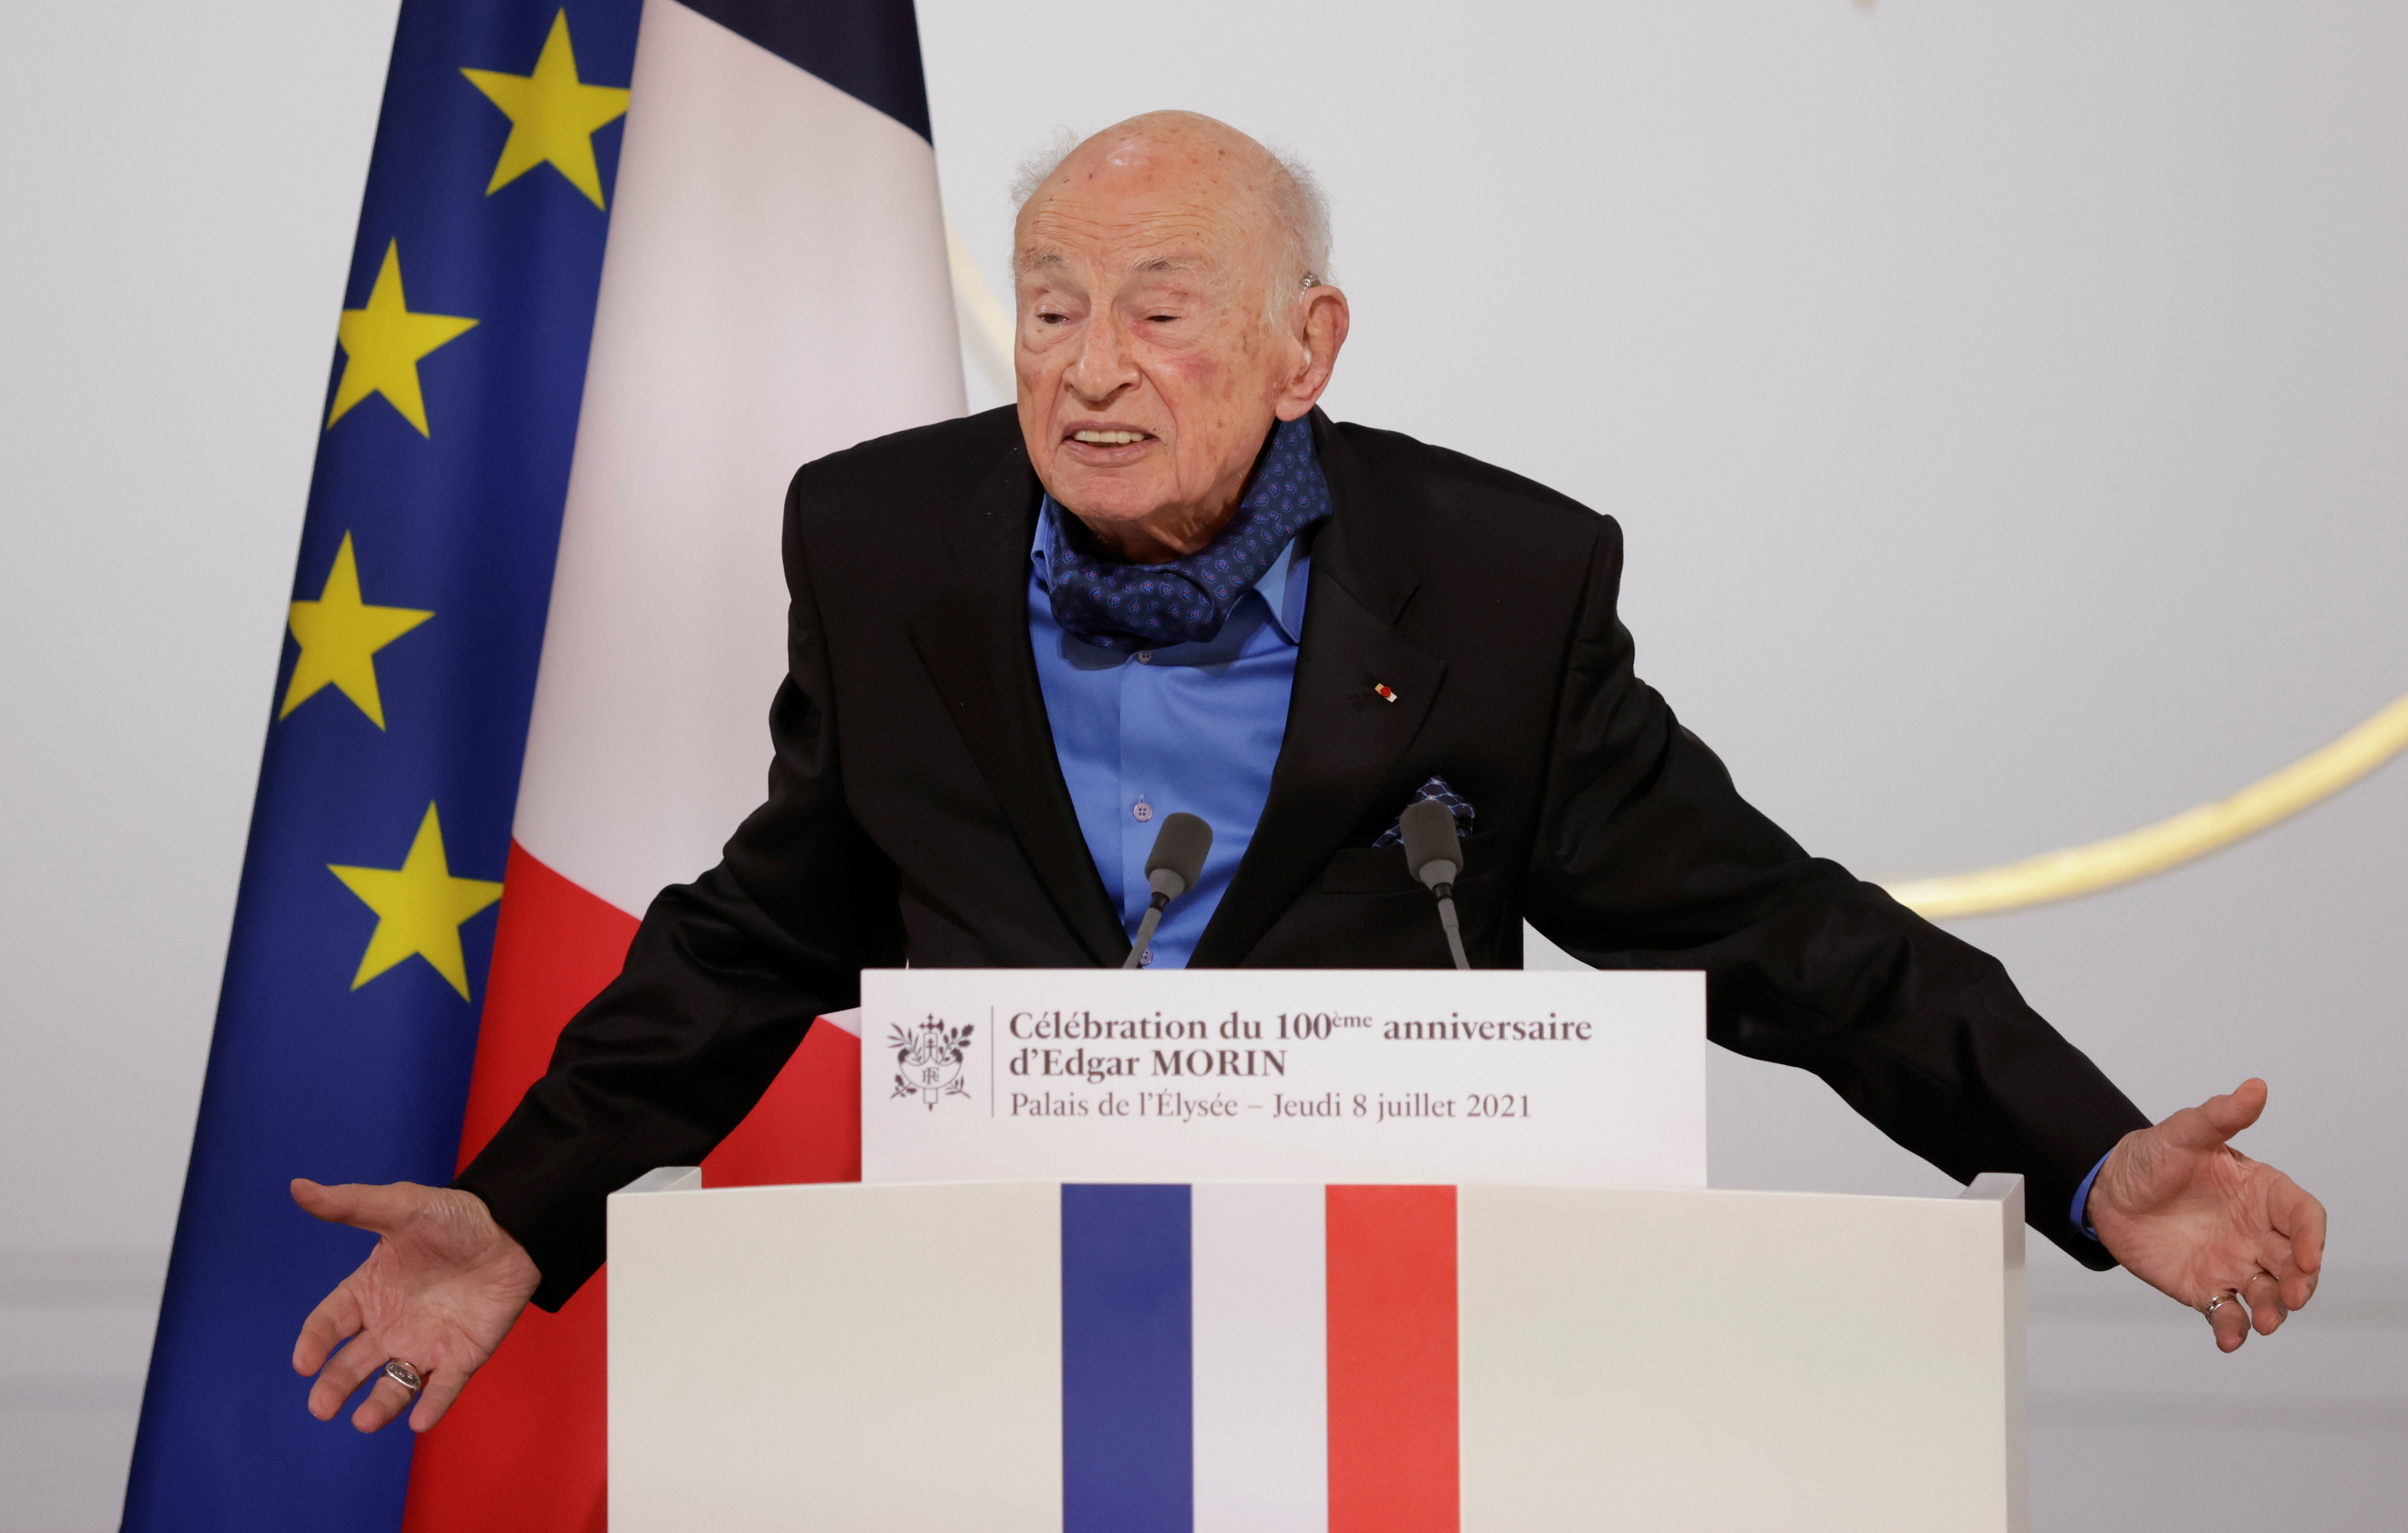 El filósofo y sociólogo francés Edgar Morin pronuncia su discurso durante una ceremonia para conmemorar su centenario en el Palacio del Elíseo en París, Francia, el 8 de julio de 2021. Foto: (Yoan Valat / Reuters).